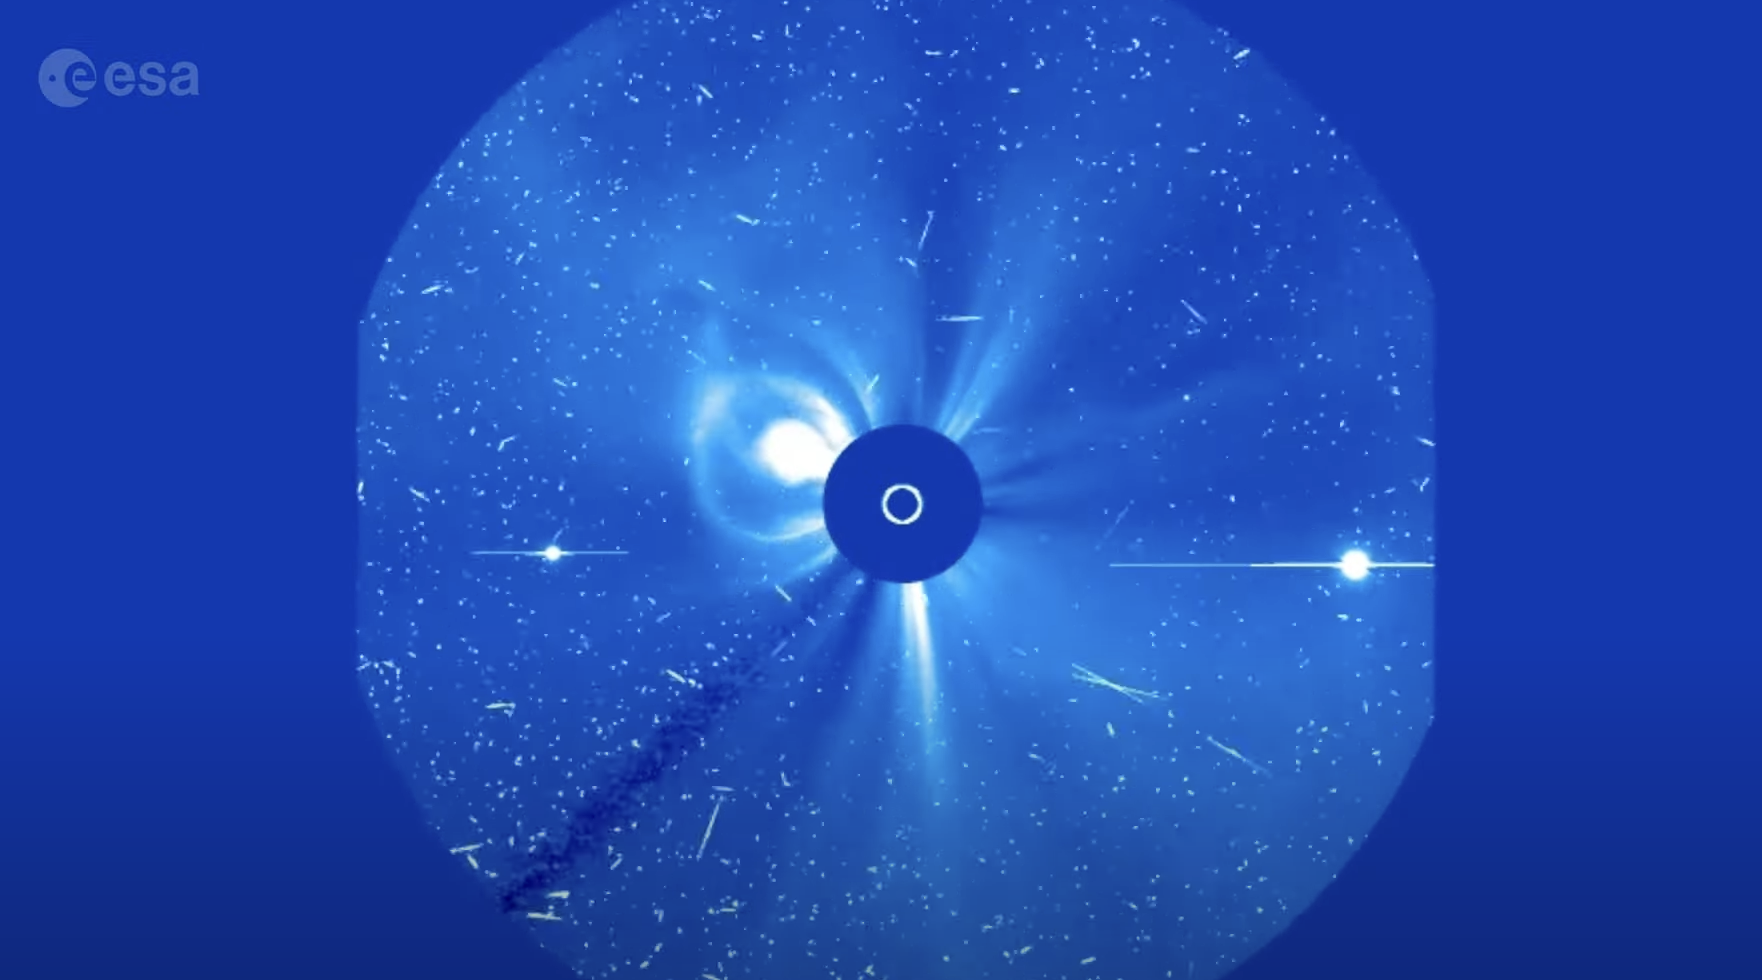 Video Solarno-heliosfernog opservatorija prikazuje najveću solarnu oluju desetljeća